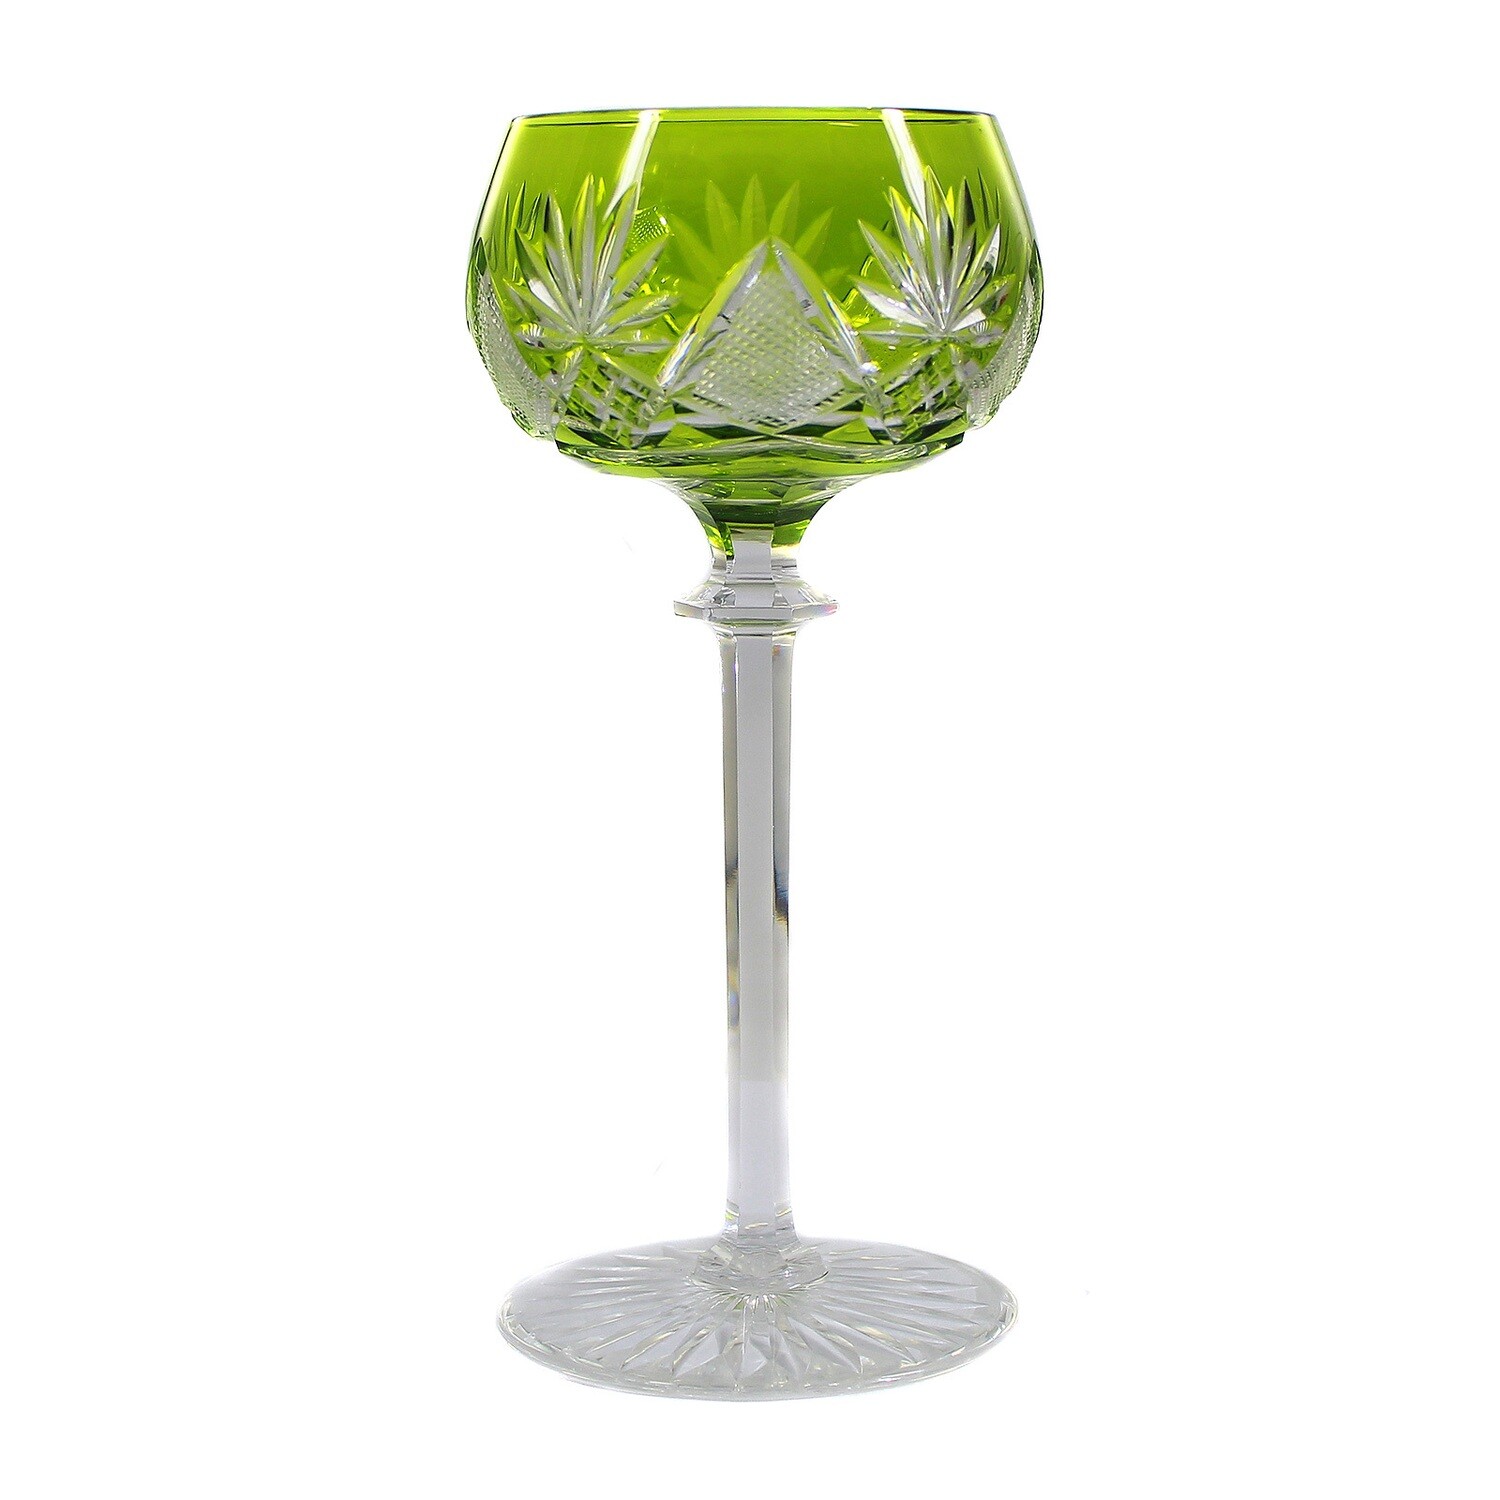 Stem glass with light green overlay, Val Saint Lambert, model Berncastel